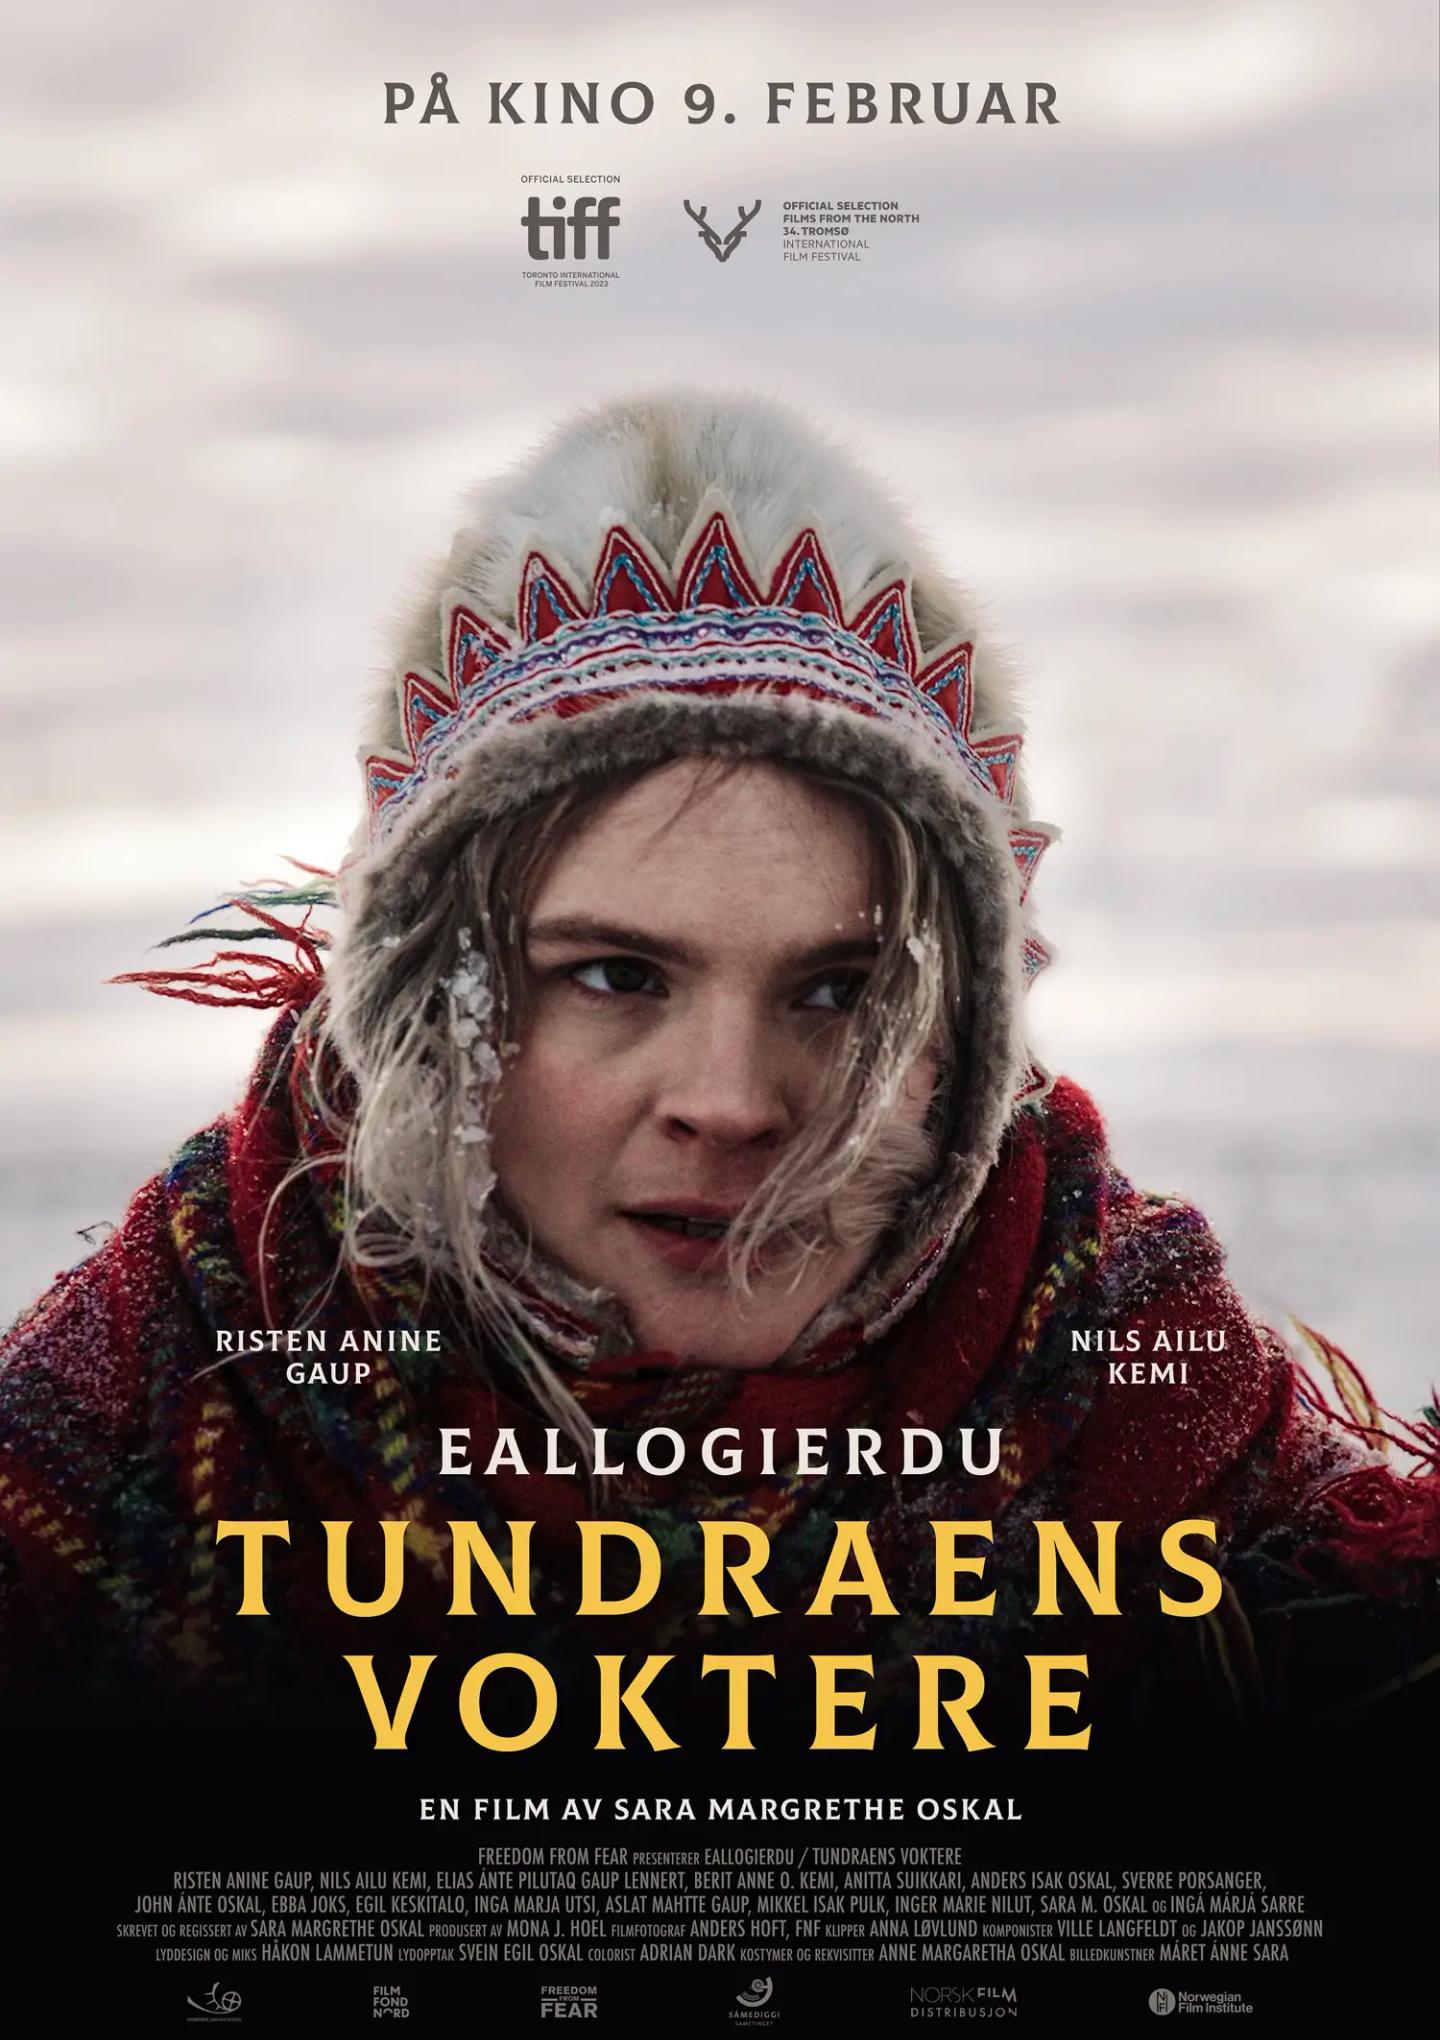 Plakat for 'Tundraens voktere - Eallogierdu'